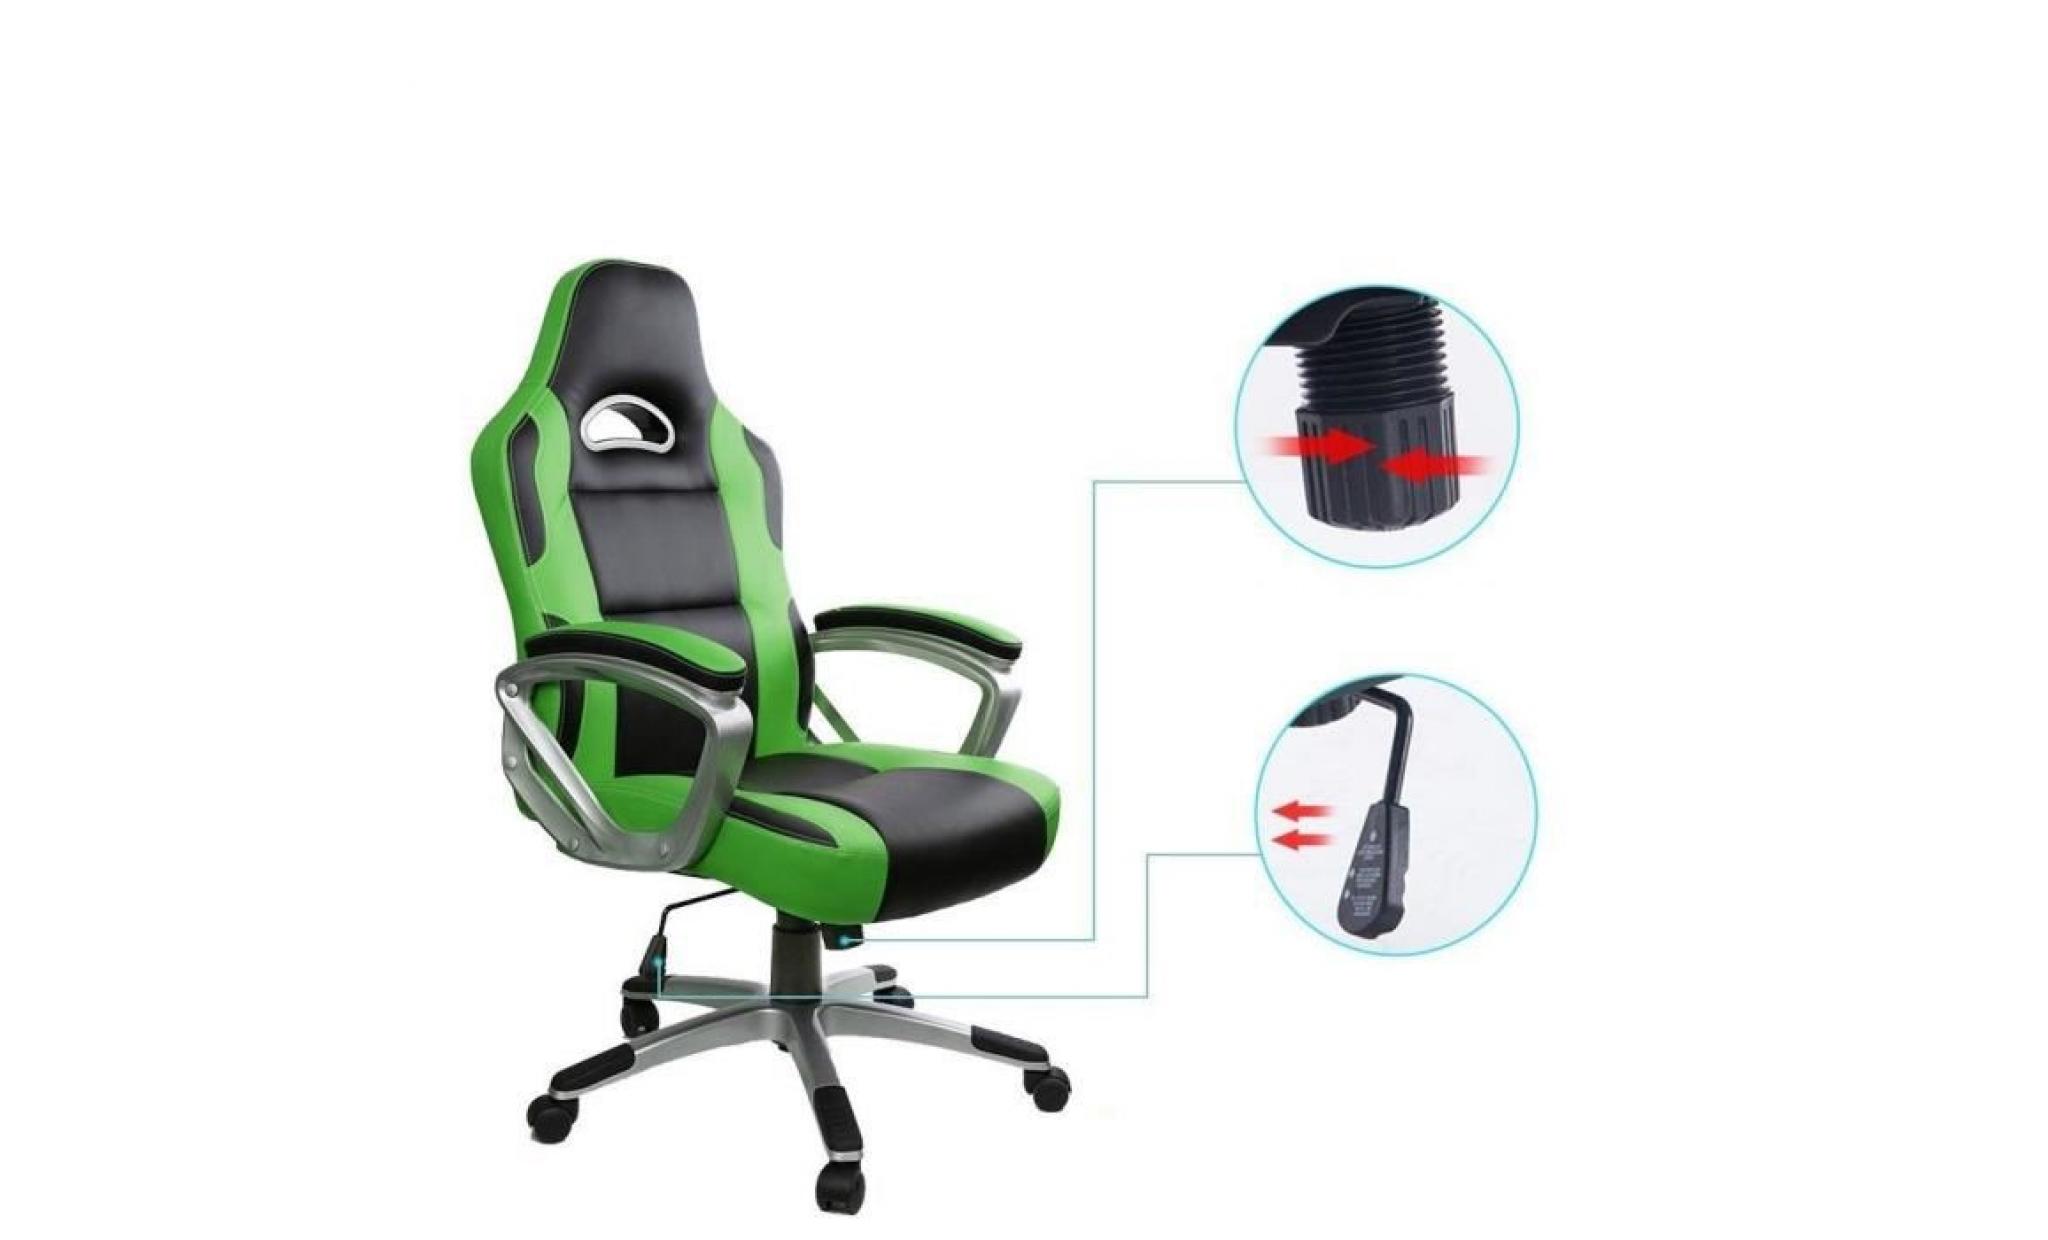 racing chaise de bureau pu   gaming chaise   fauteuil de bureau   hauteur réglable   rouge   intimate wm heat pas cher